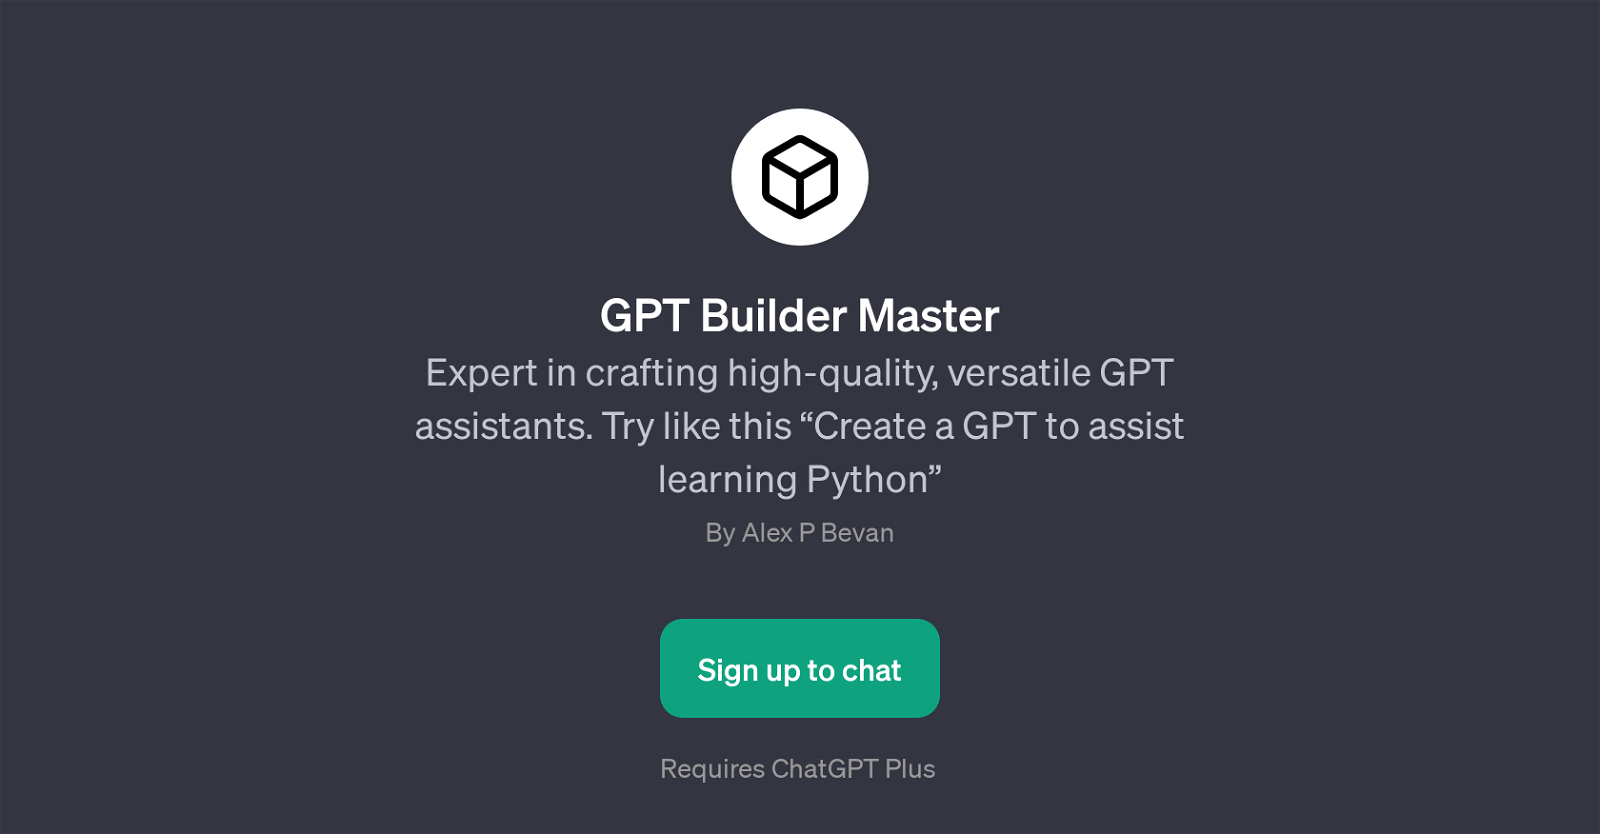 GPT Builder Master website